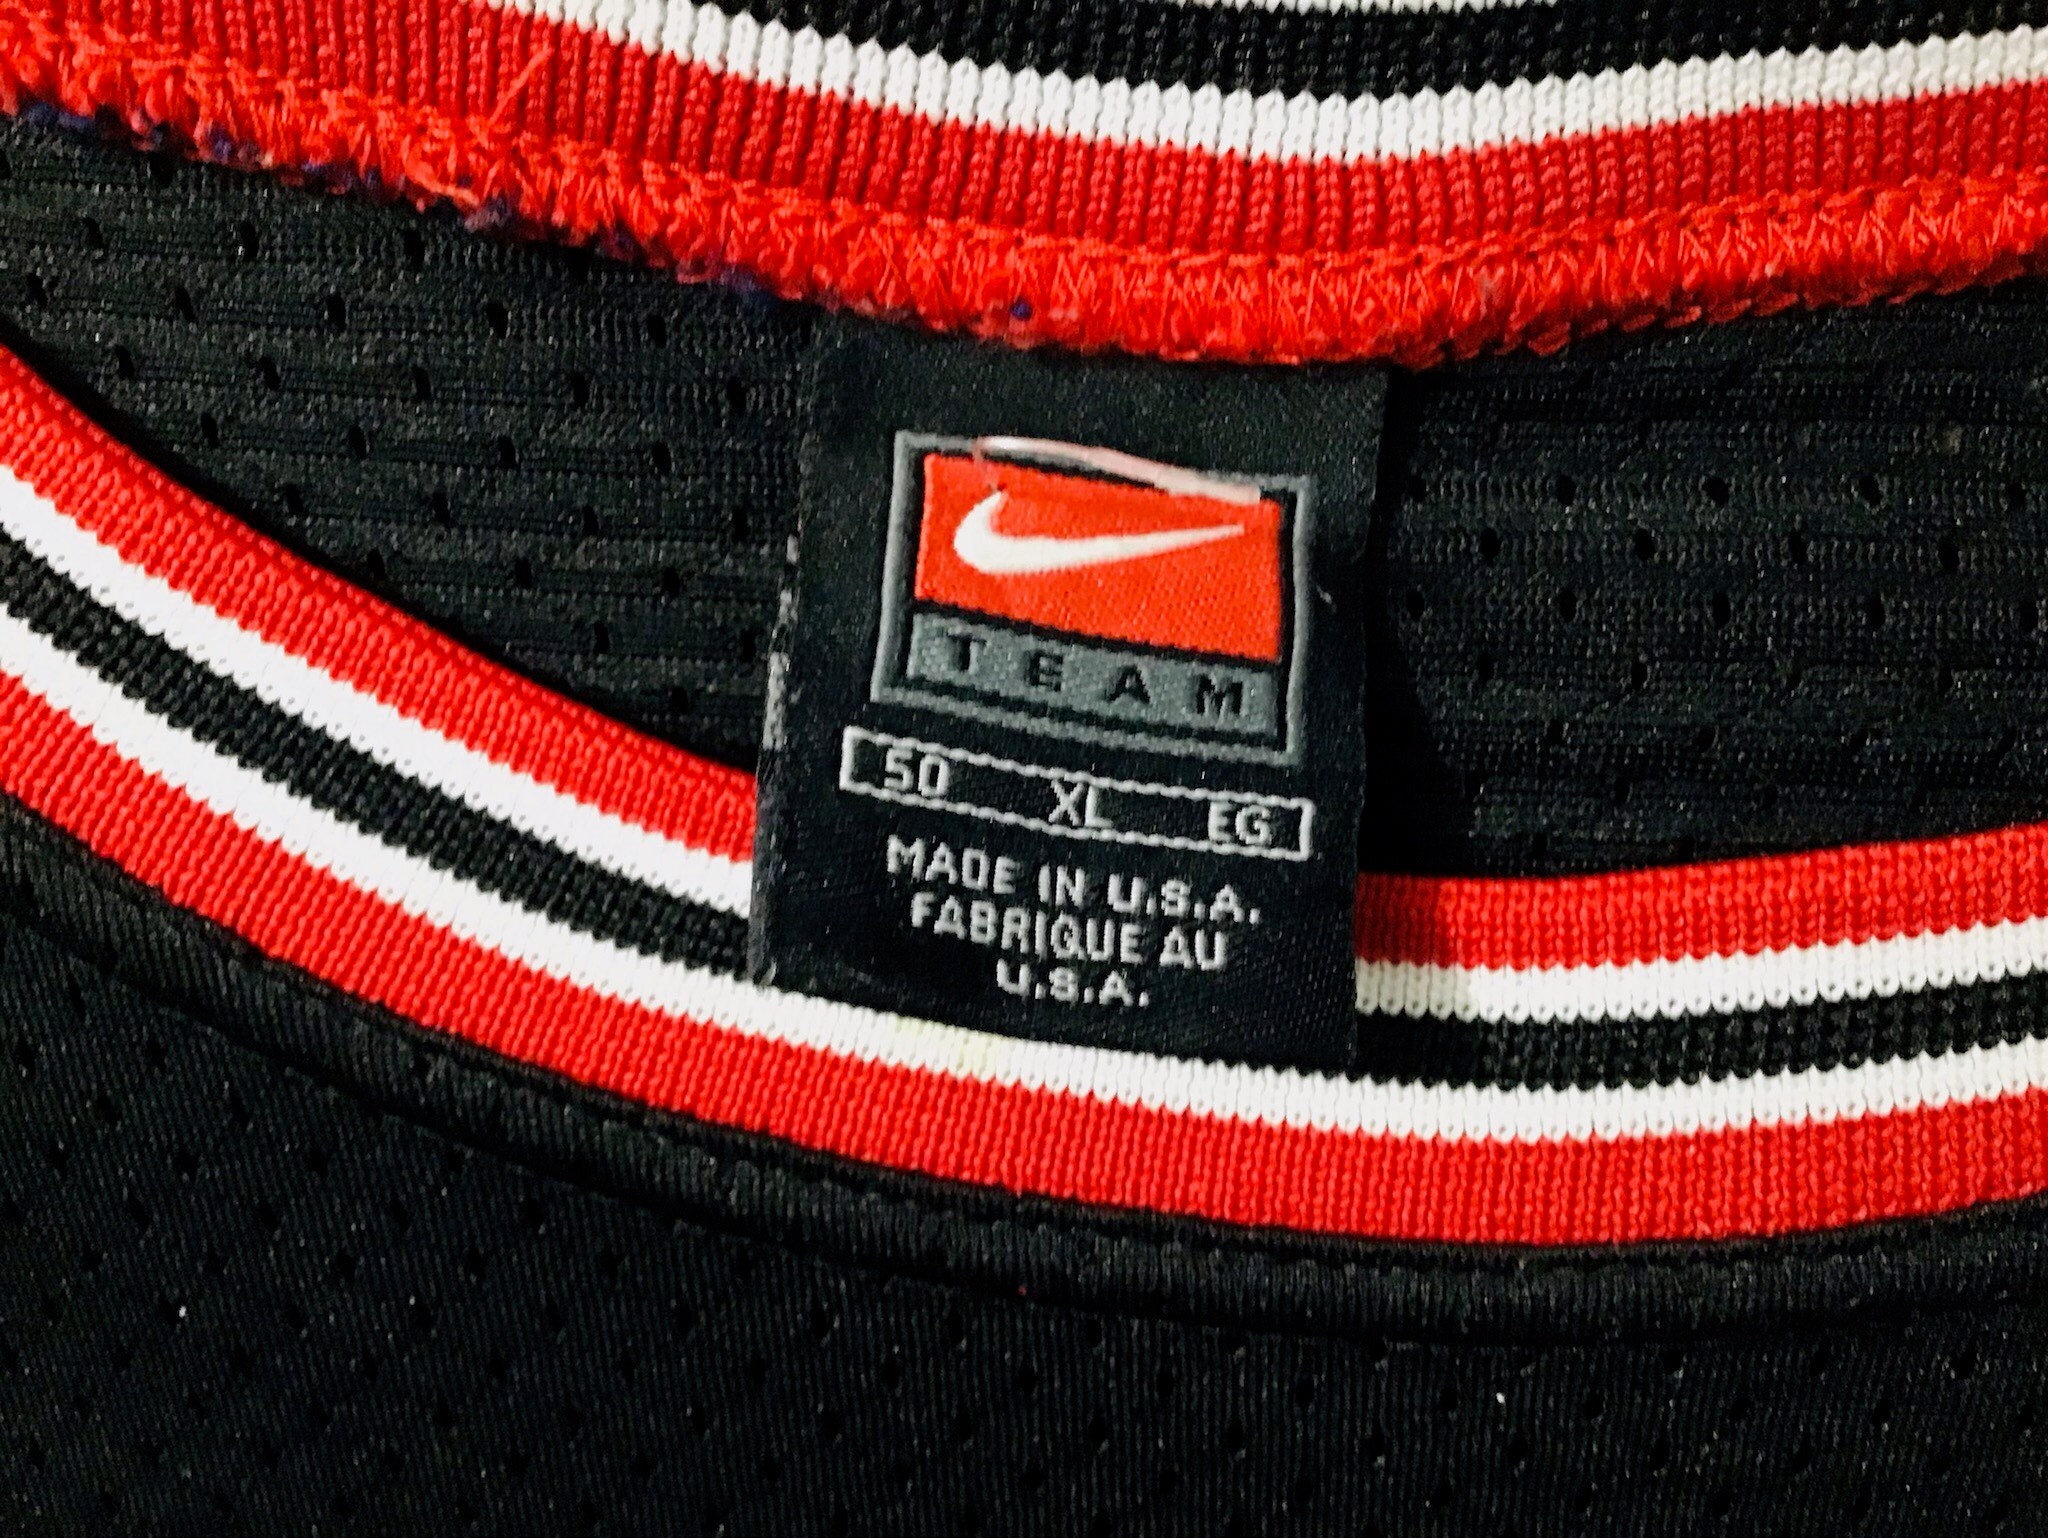 Original Nike 1997-98 Michael Jordan 23 Chicago Bulls Black 